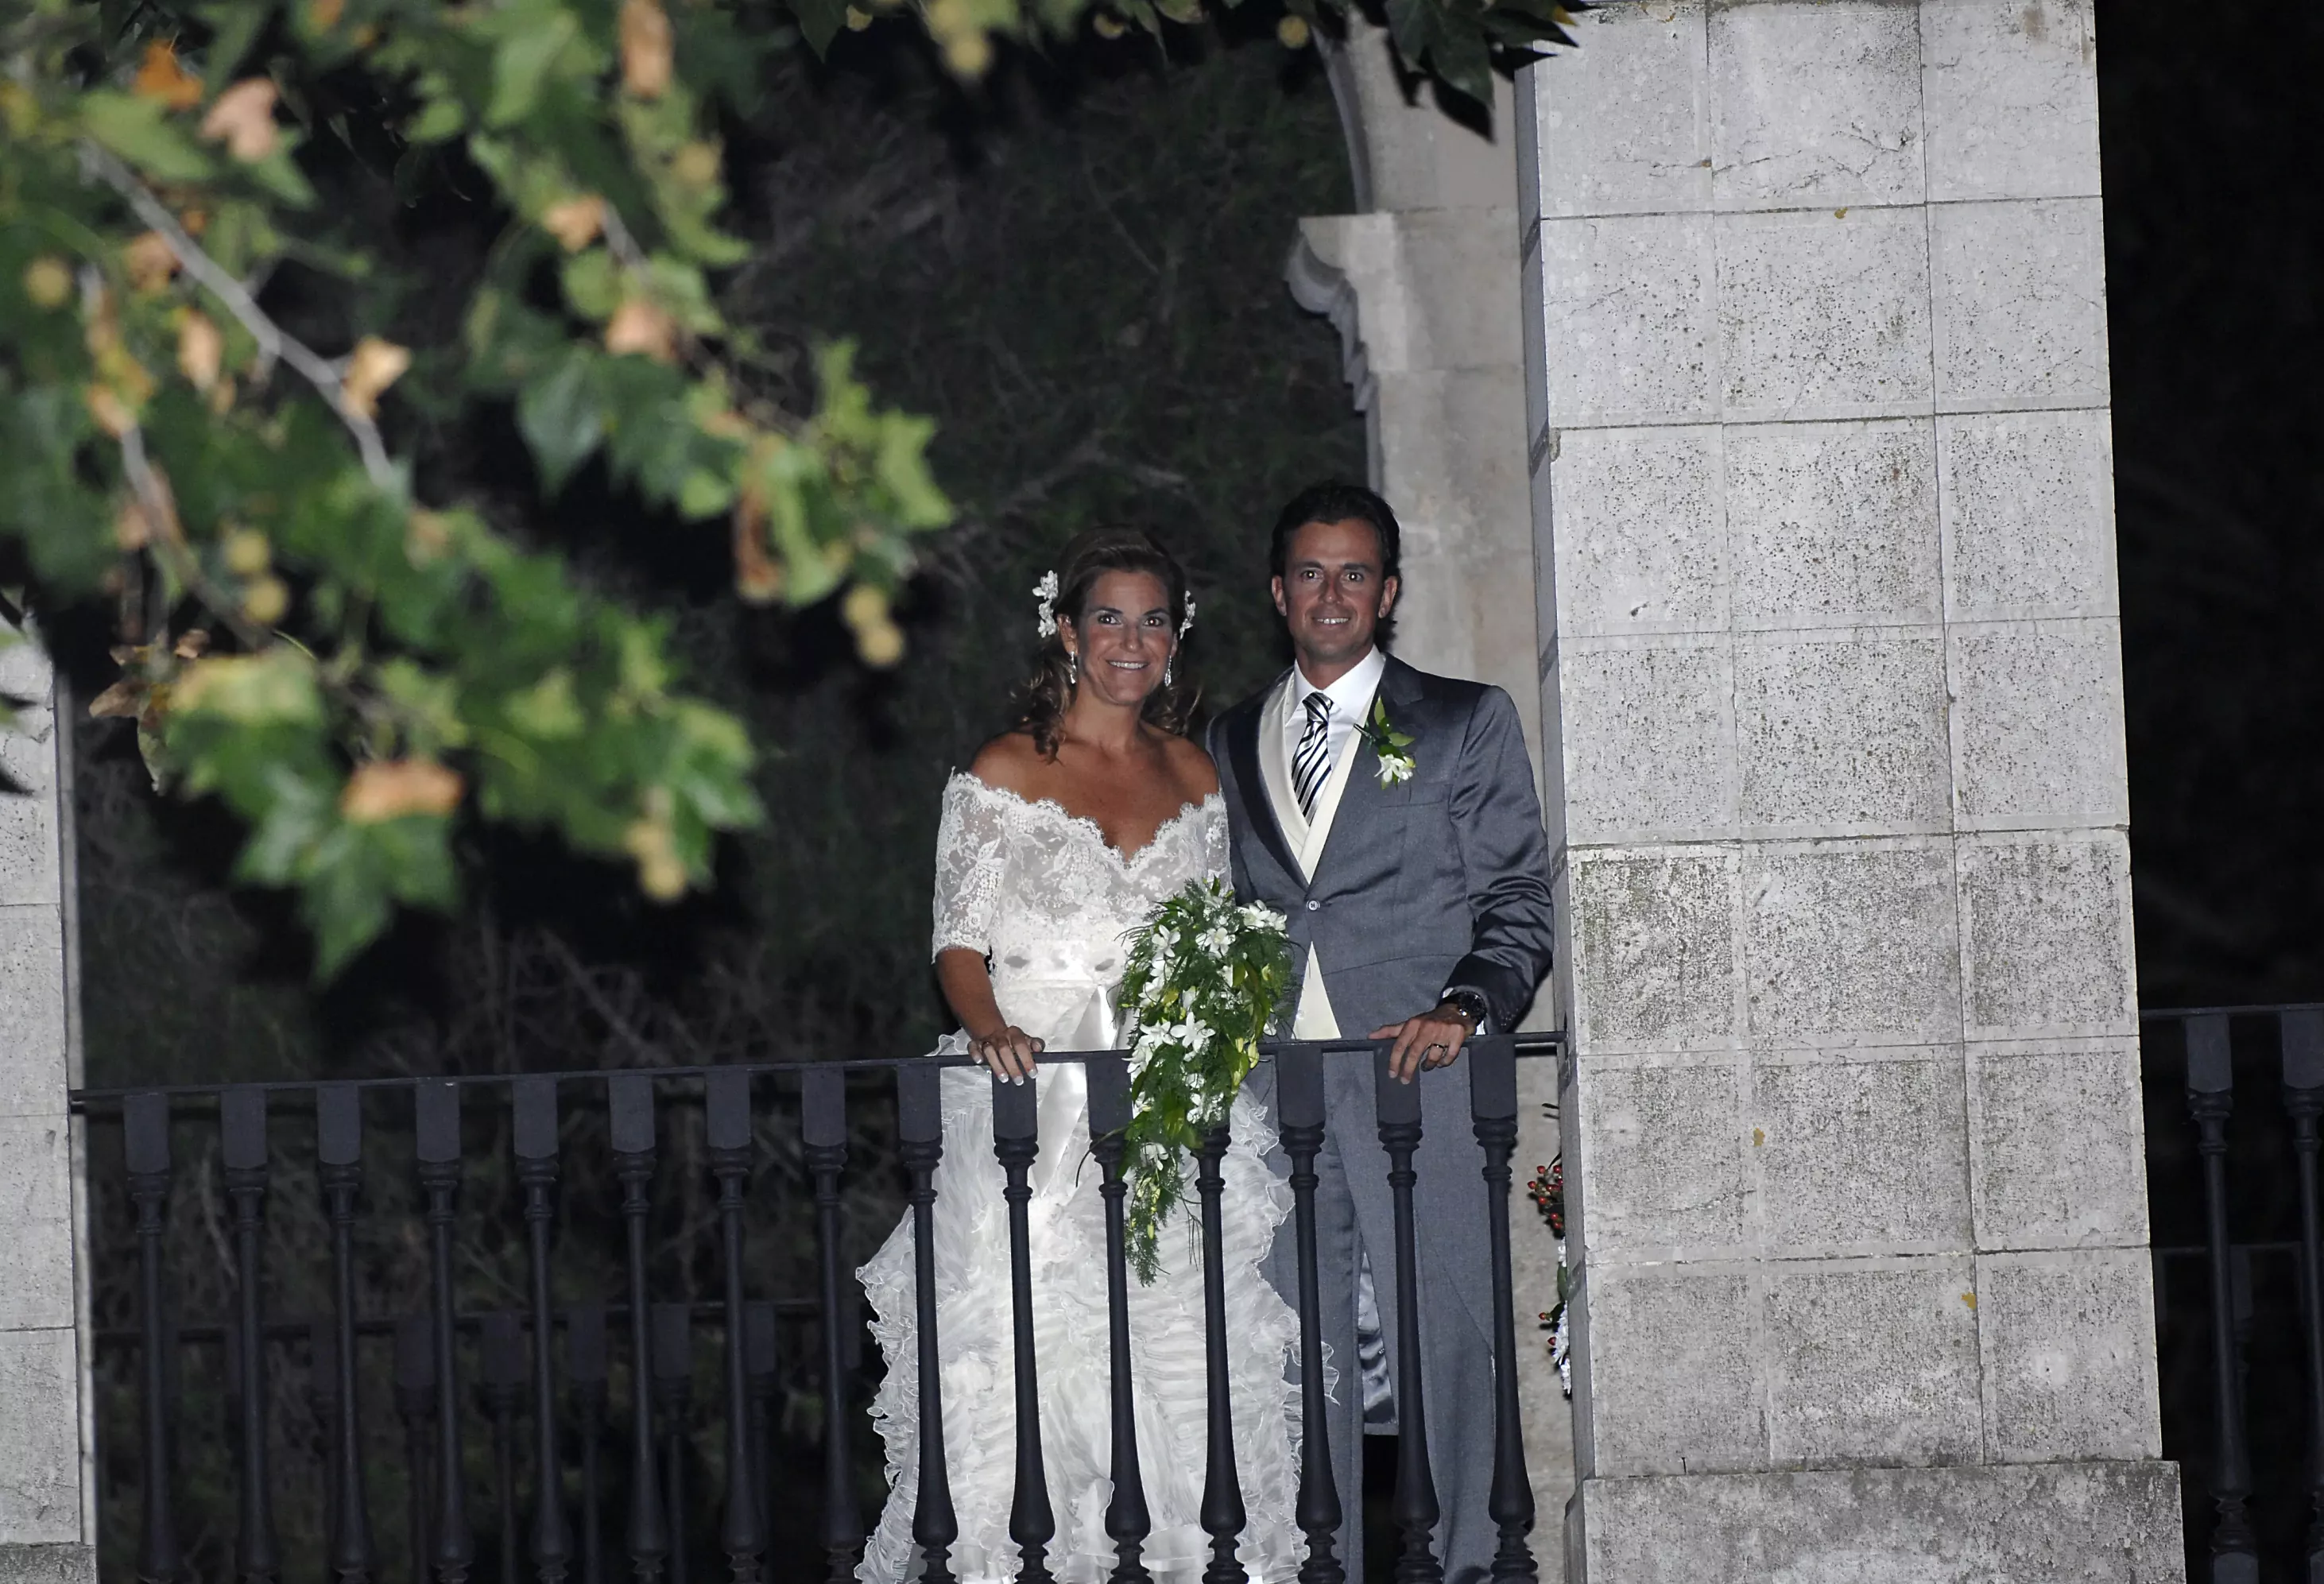 Imagen de Arantxa Sánchez Vicario y Josep Santacana en el día de su boda.